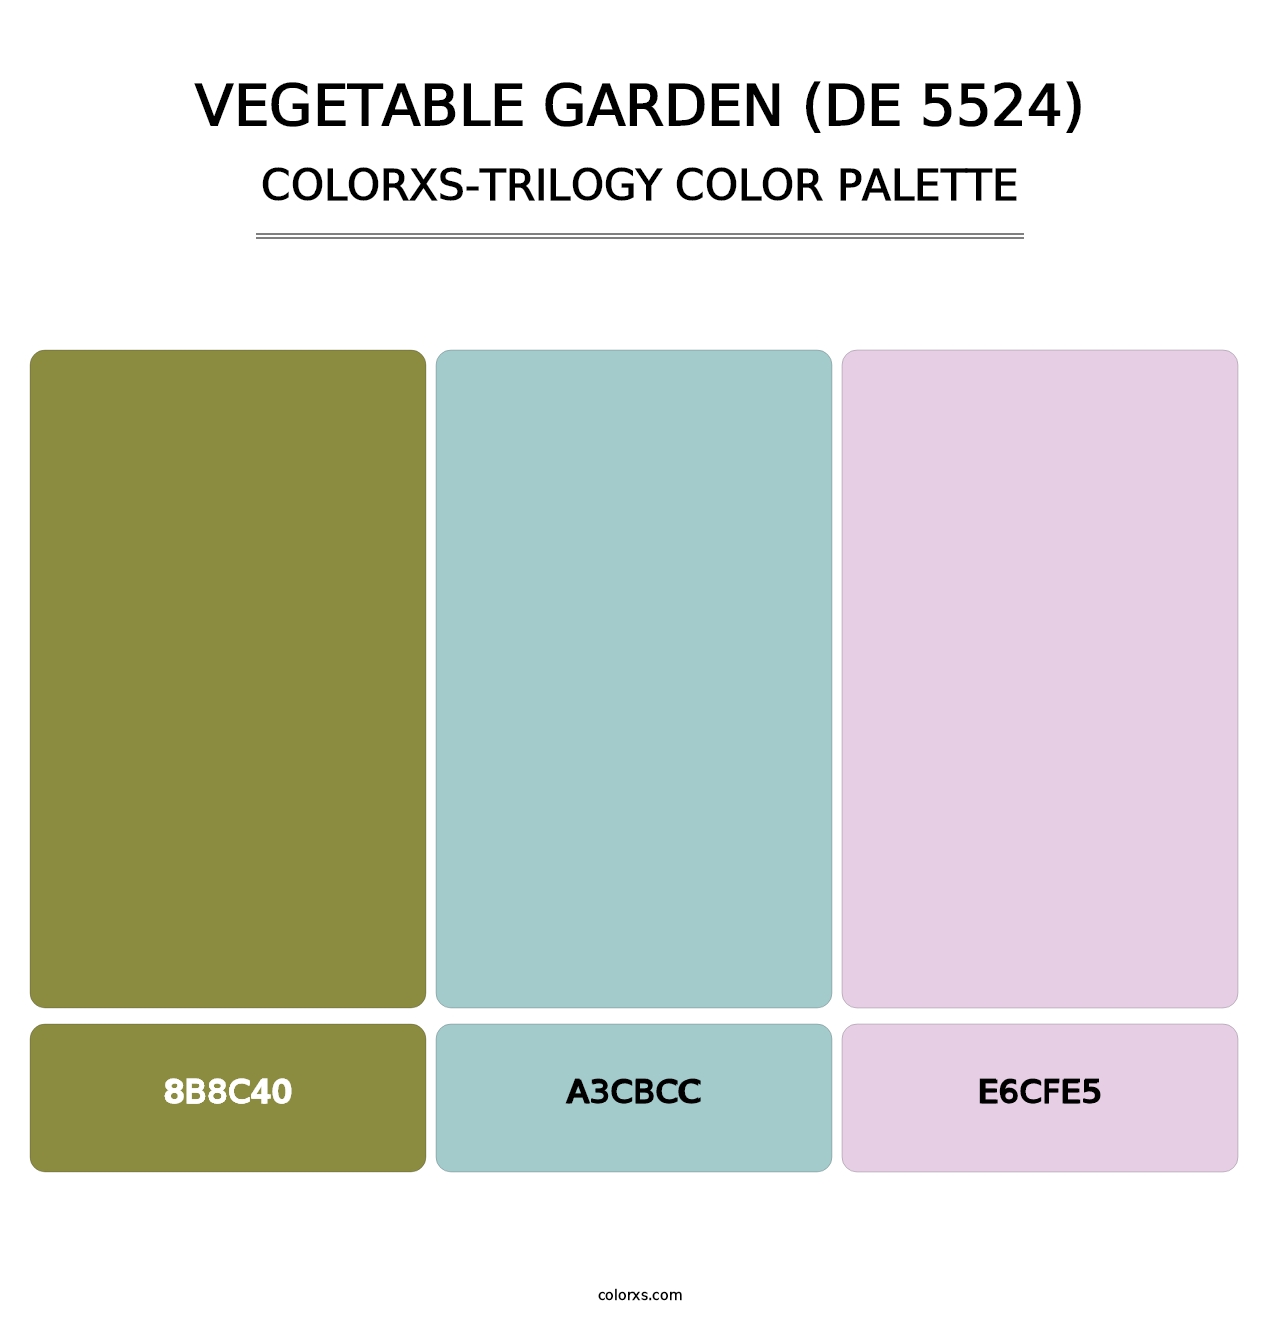 Vegetable Garden (DE 5524) - Colorxs Trilogy Palette